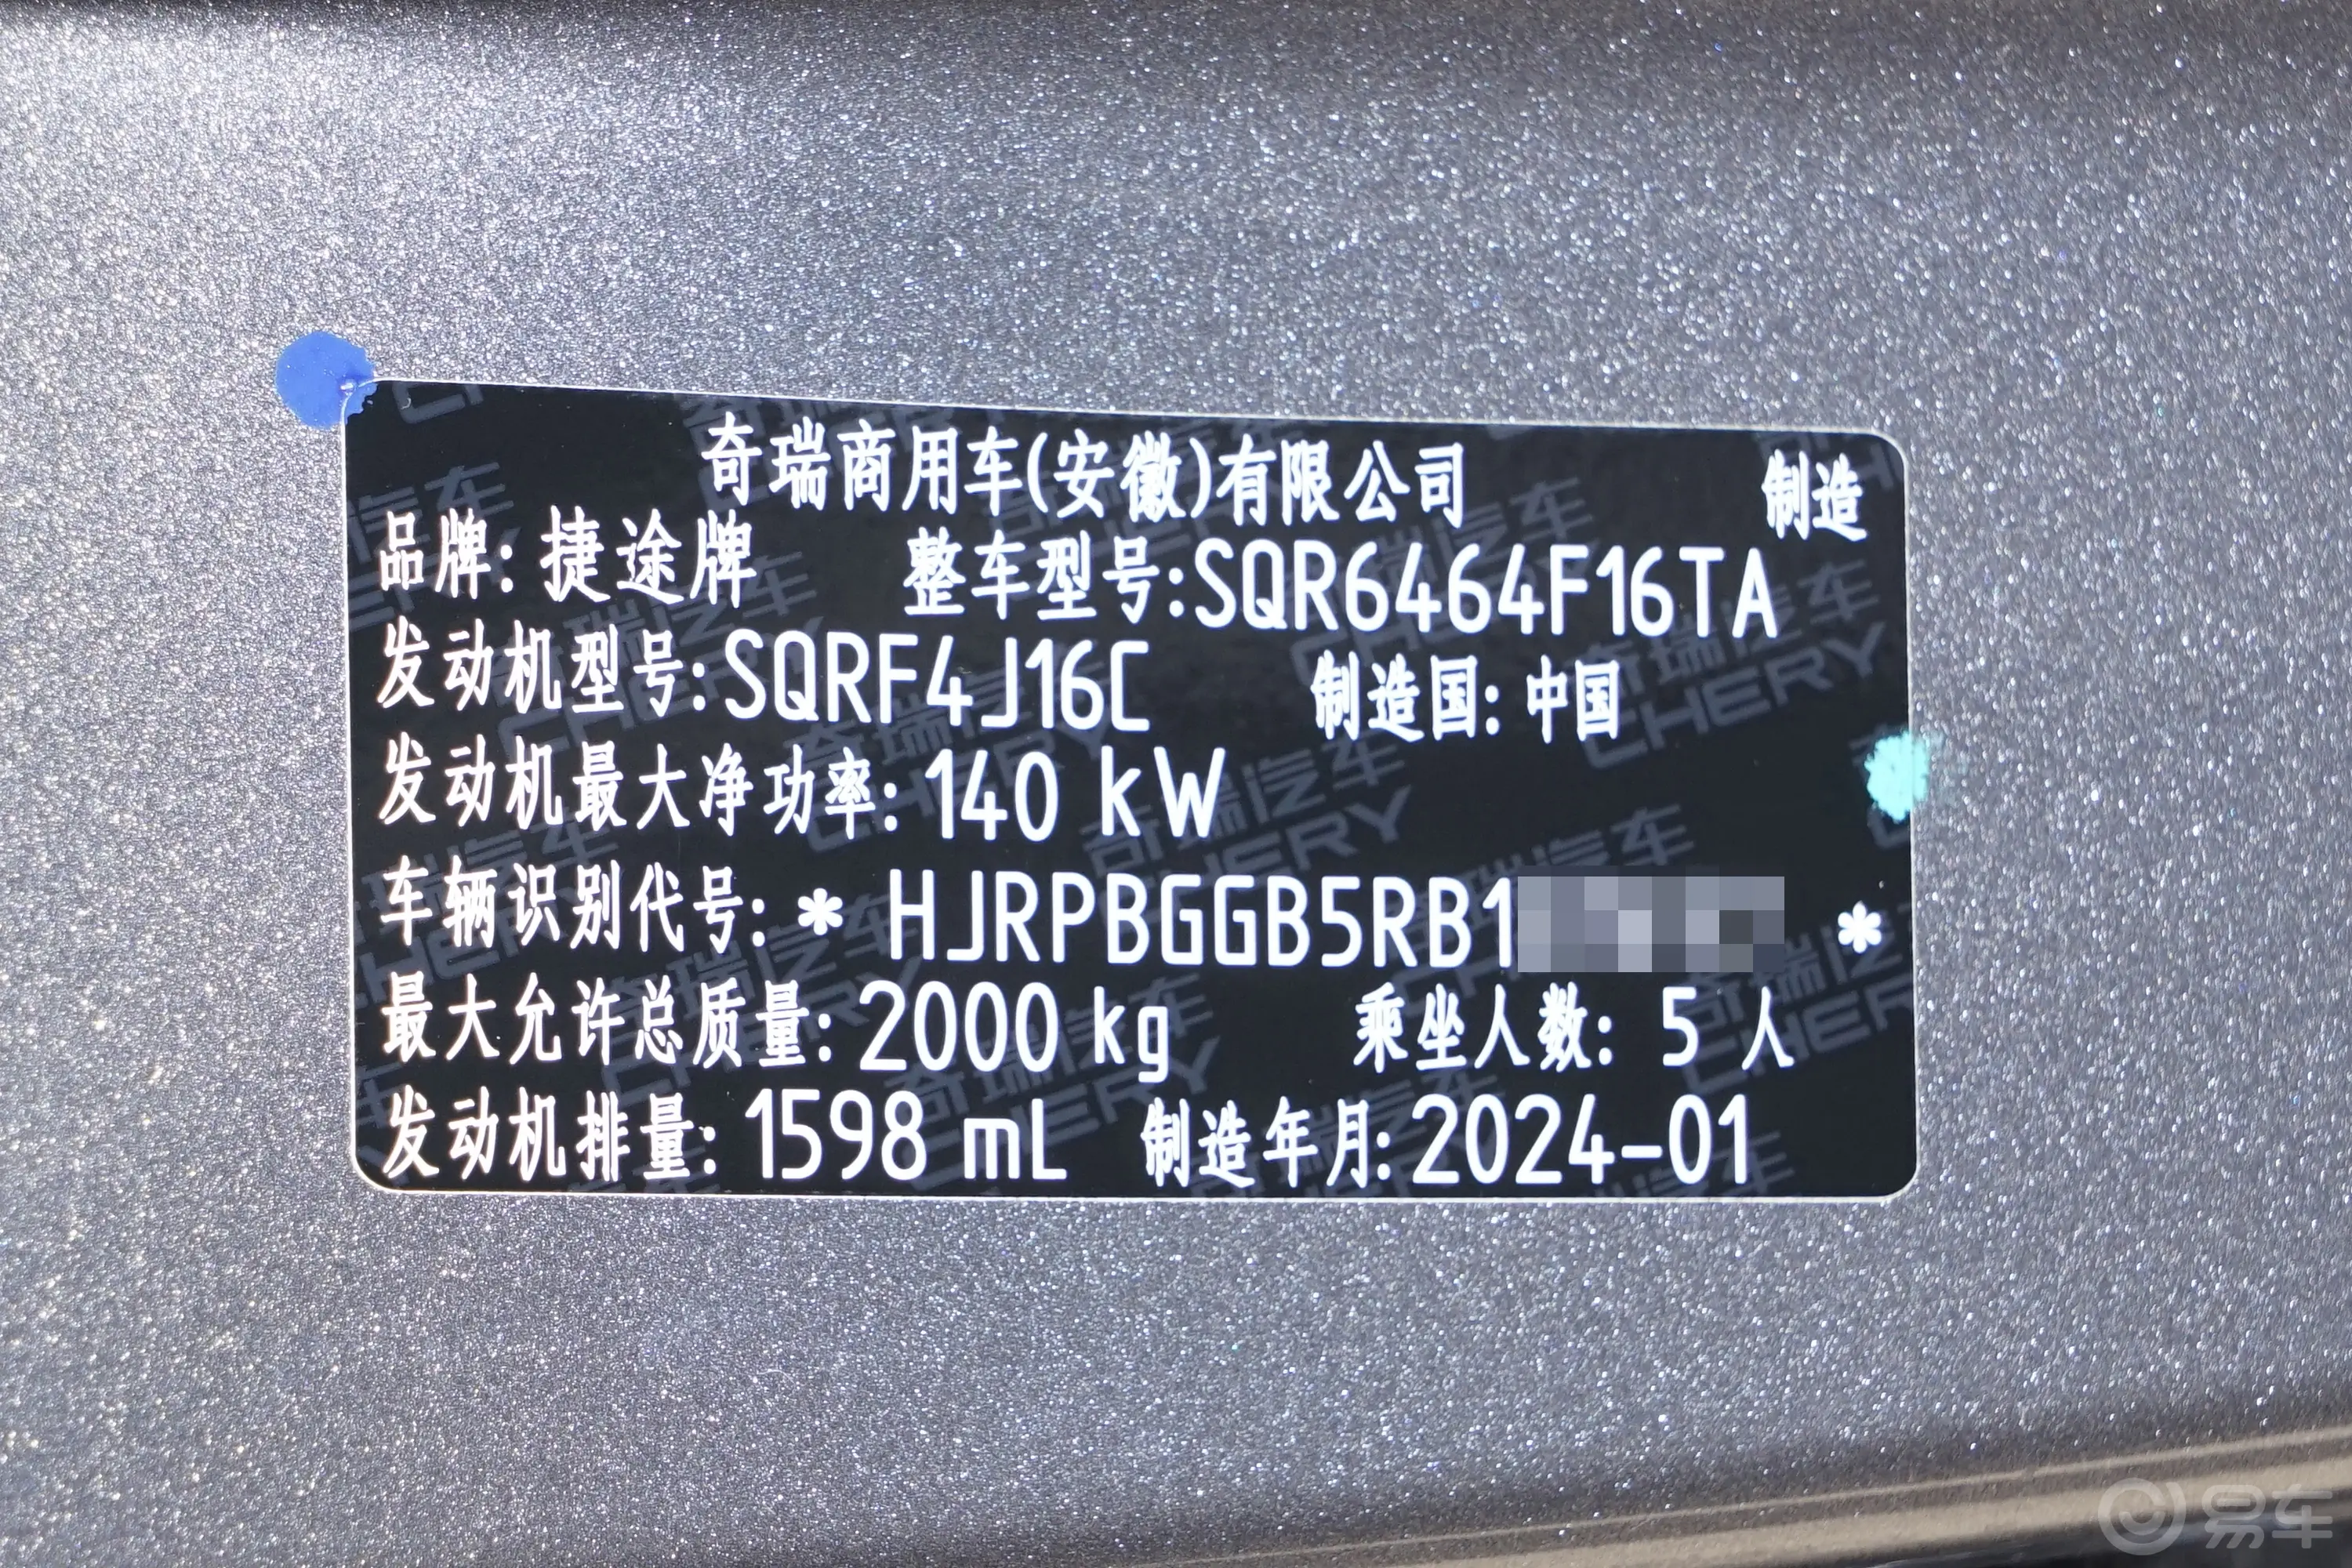 捷途大圣龙腾版 1.6T MAX车辆信息铭牌